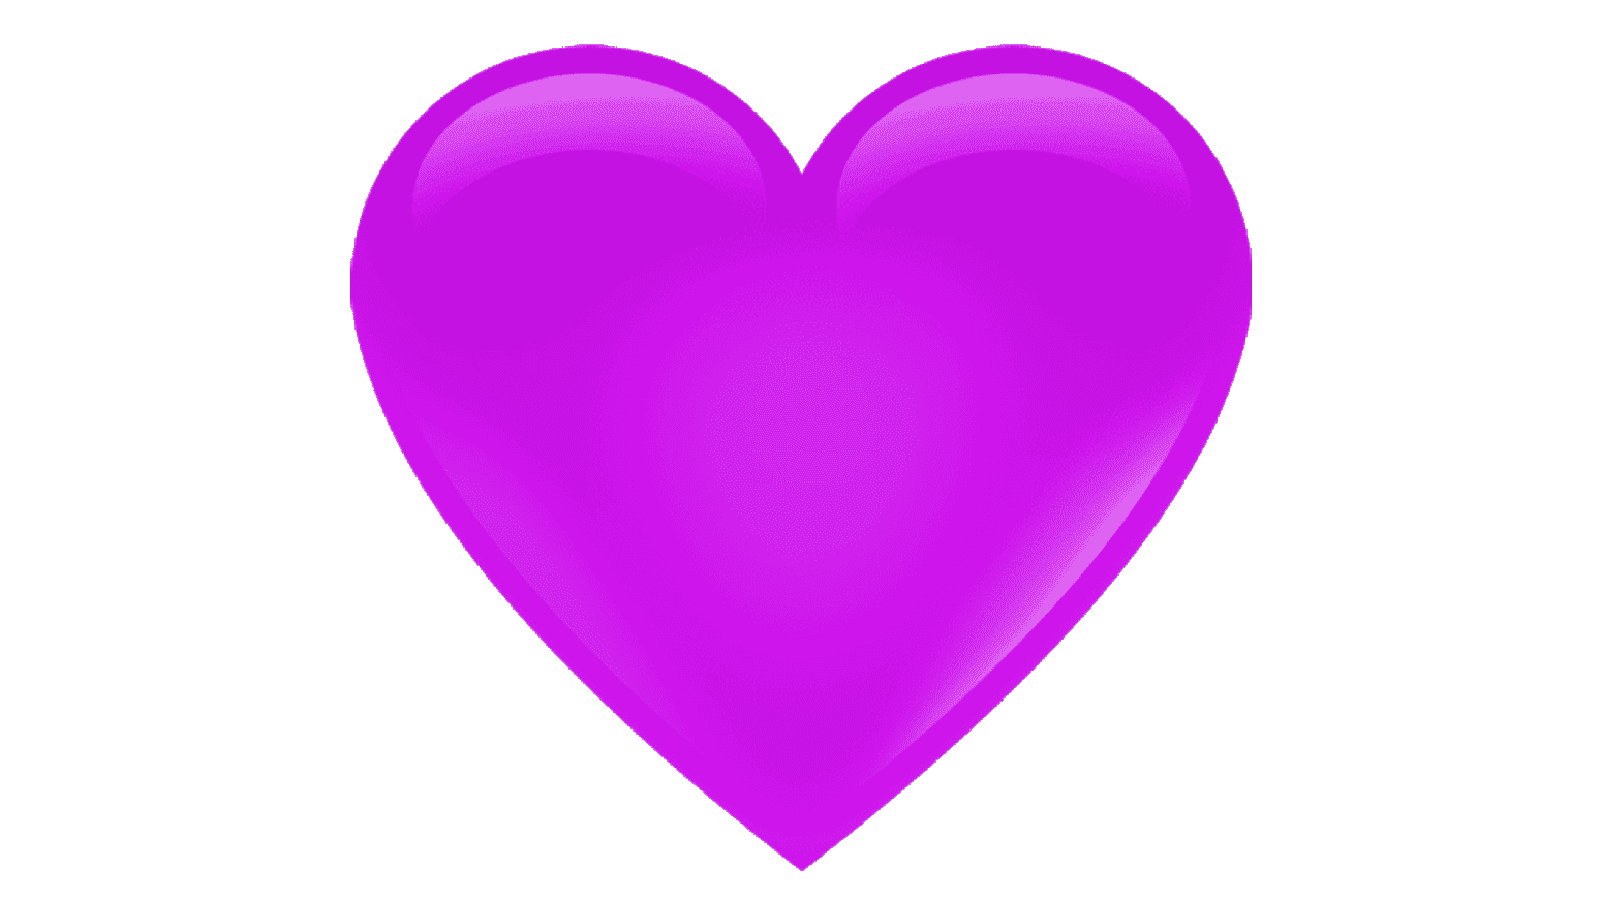 Purple Heart Emoji Meaning